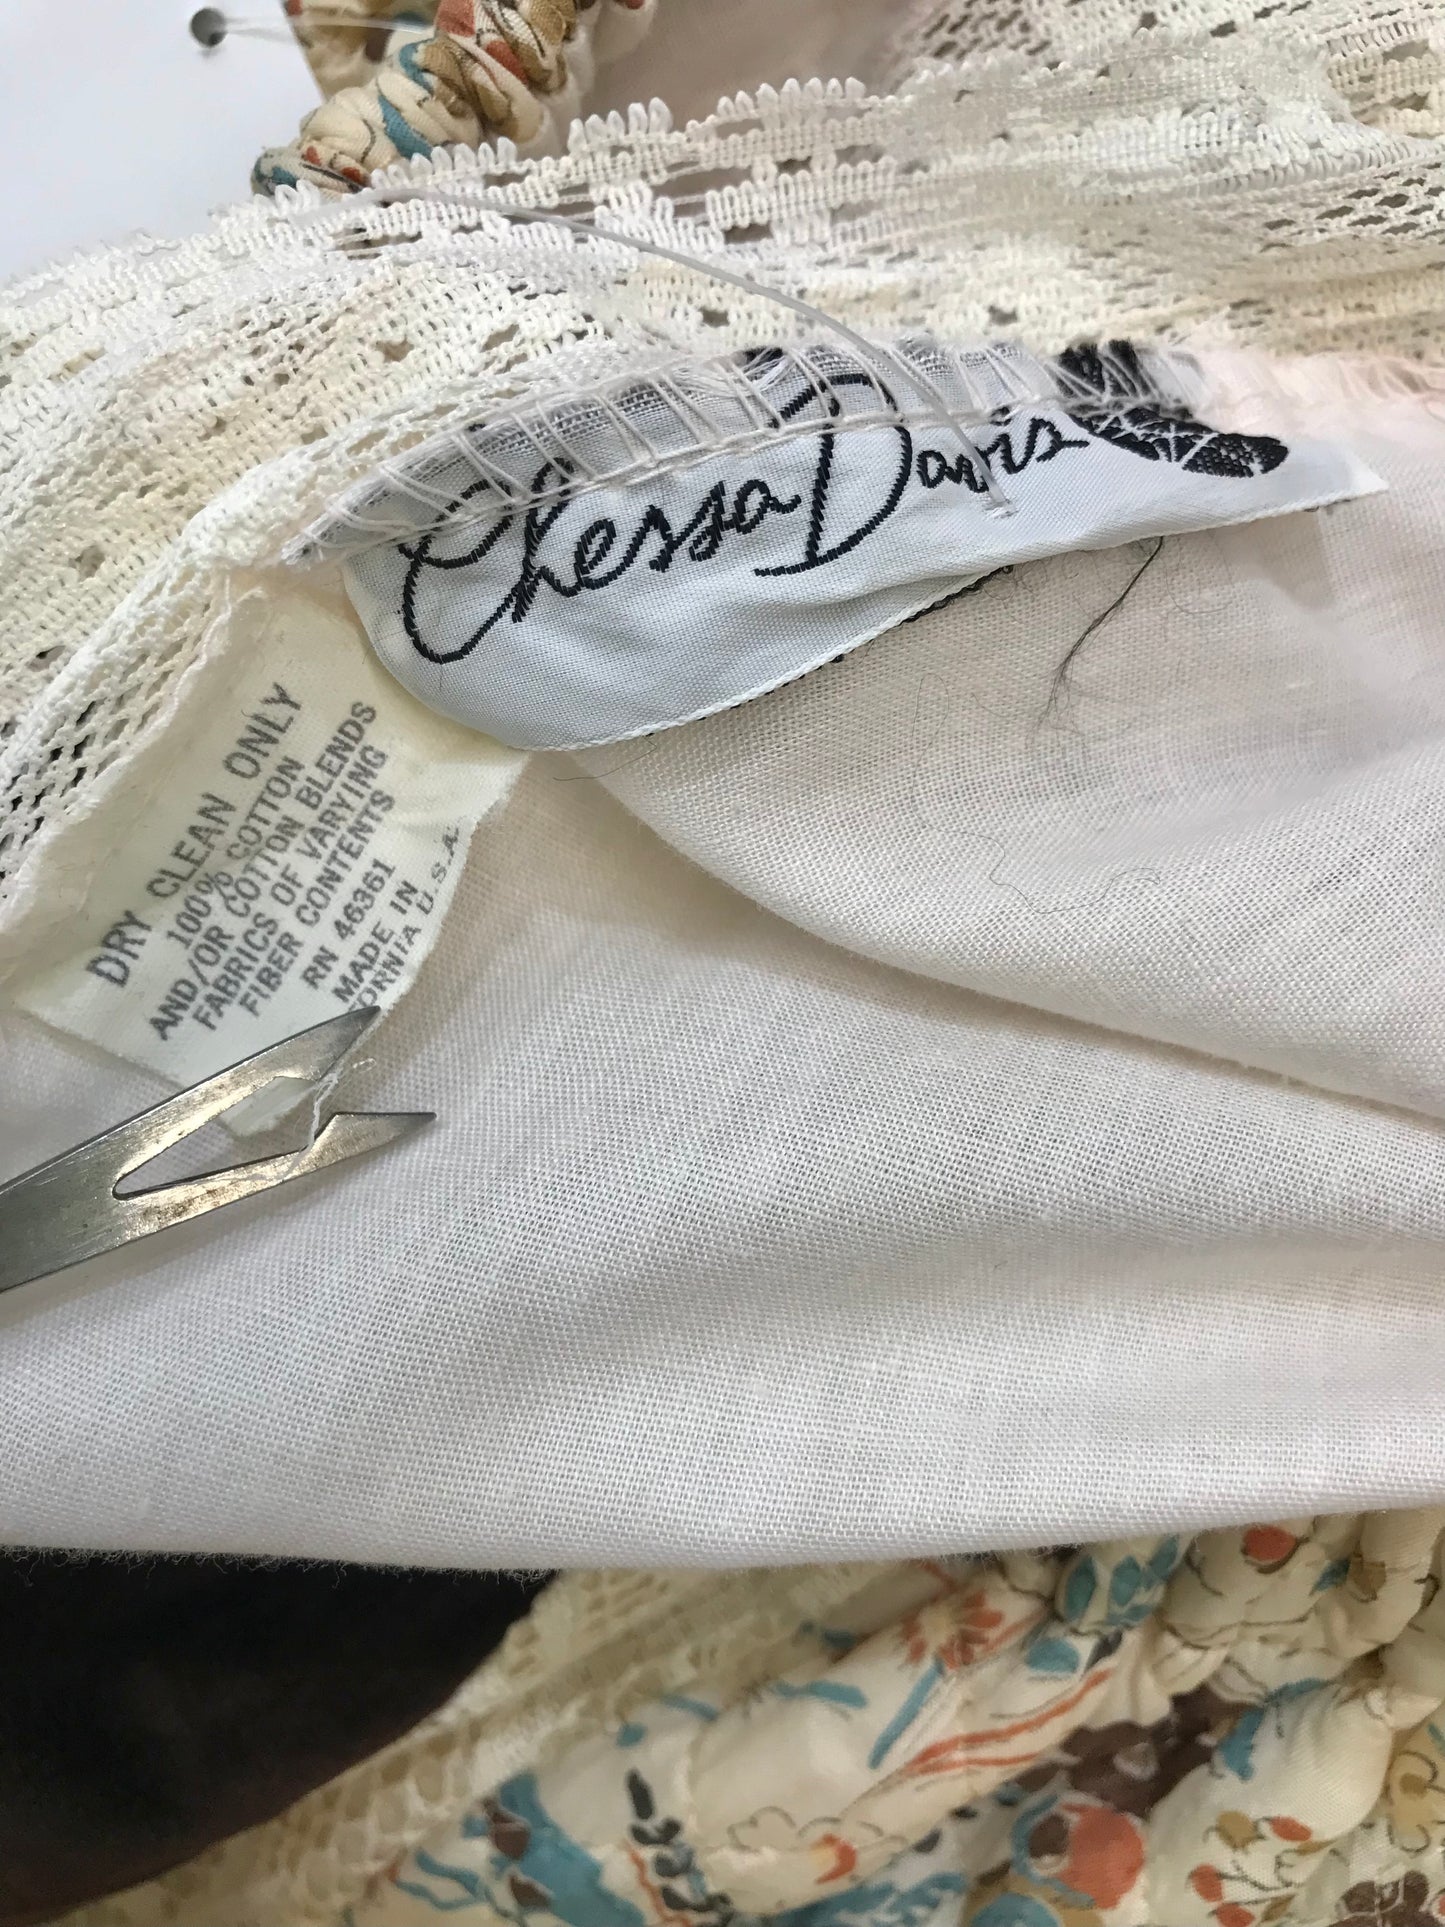 ’70s Vintage Skirt Chessa Davis[I24945]